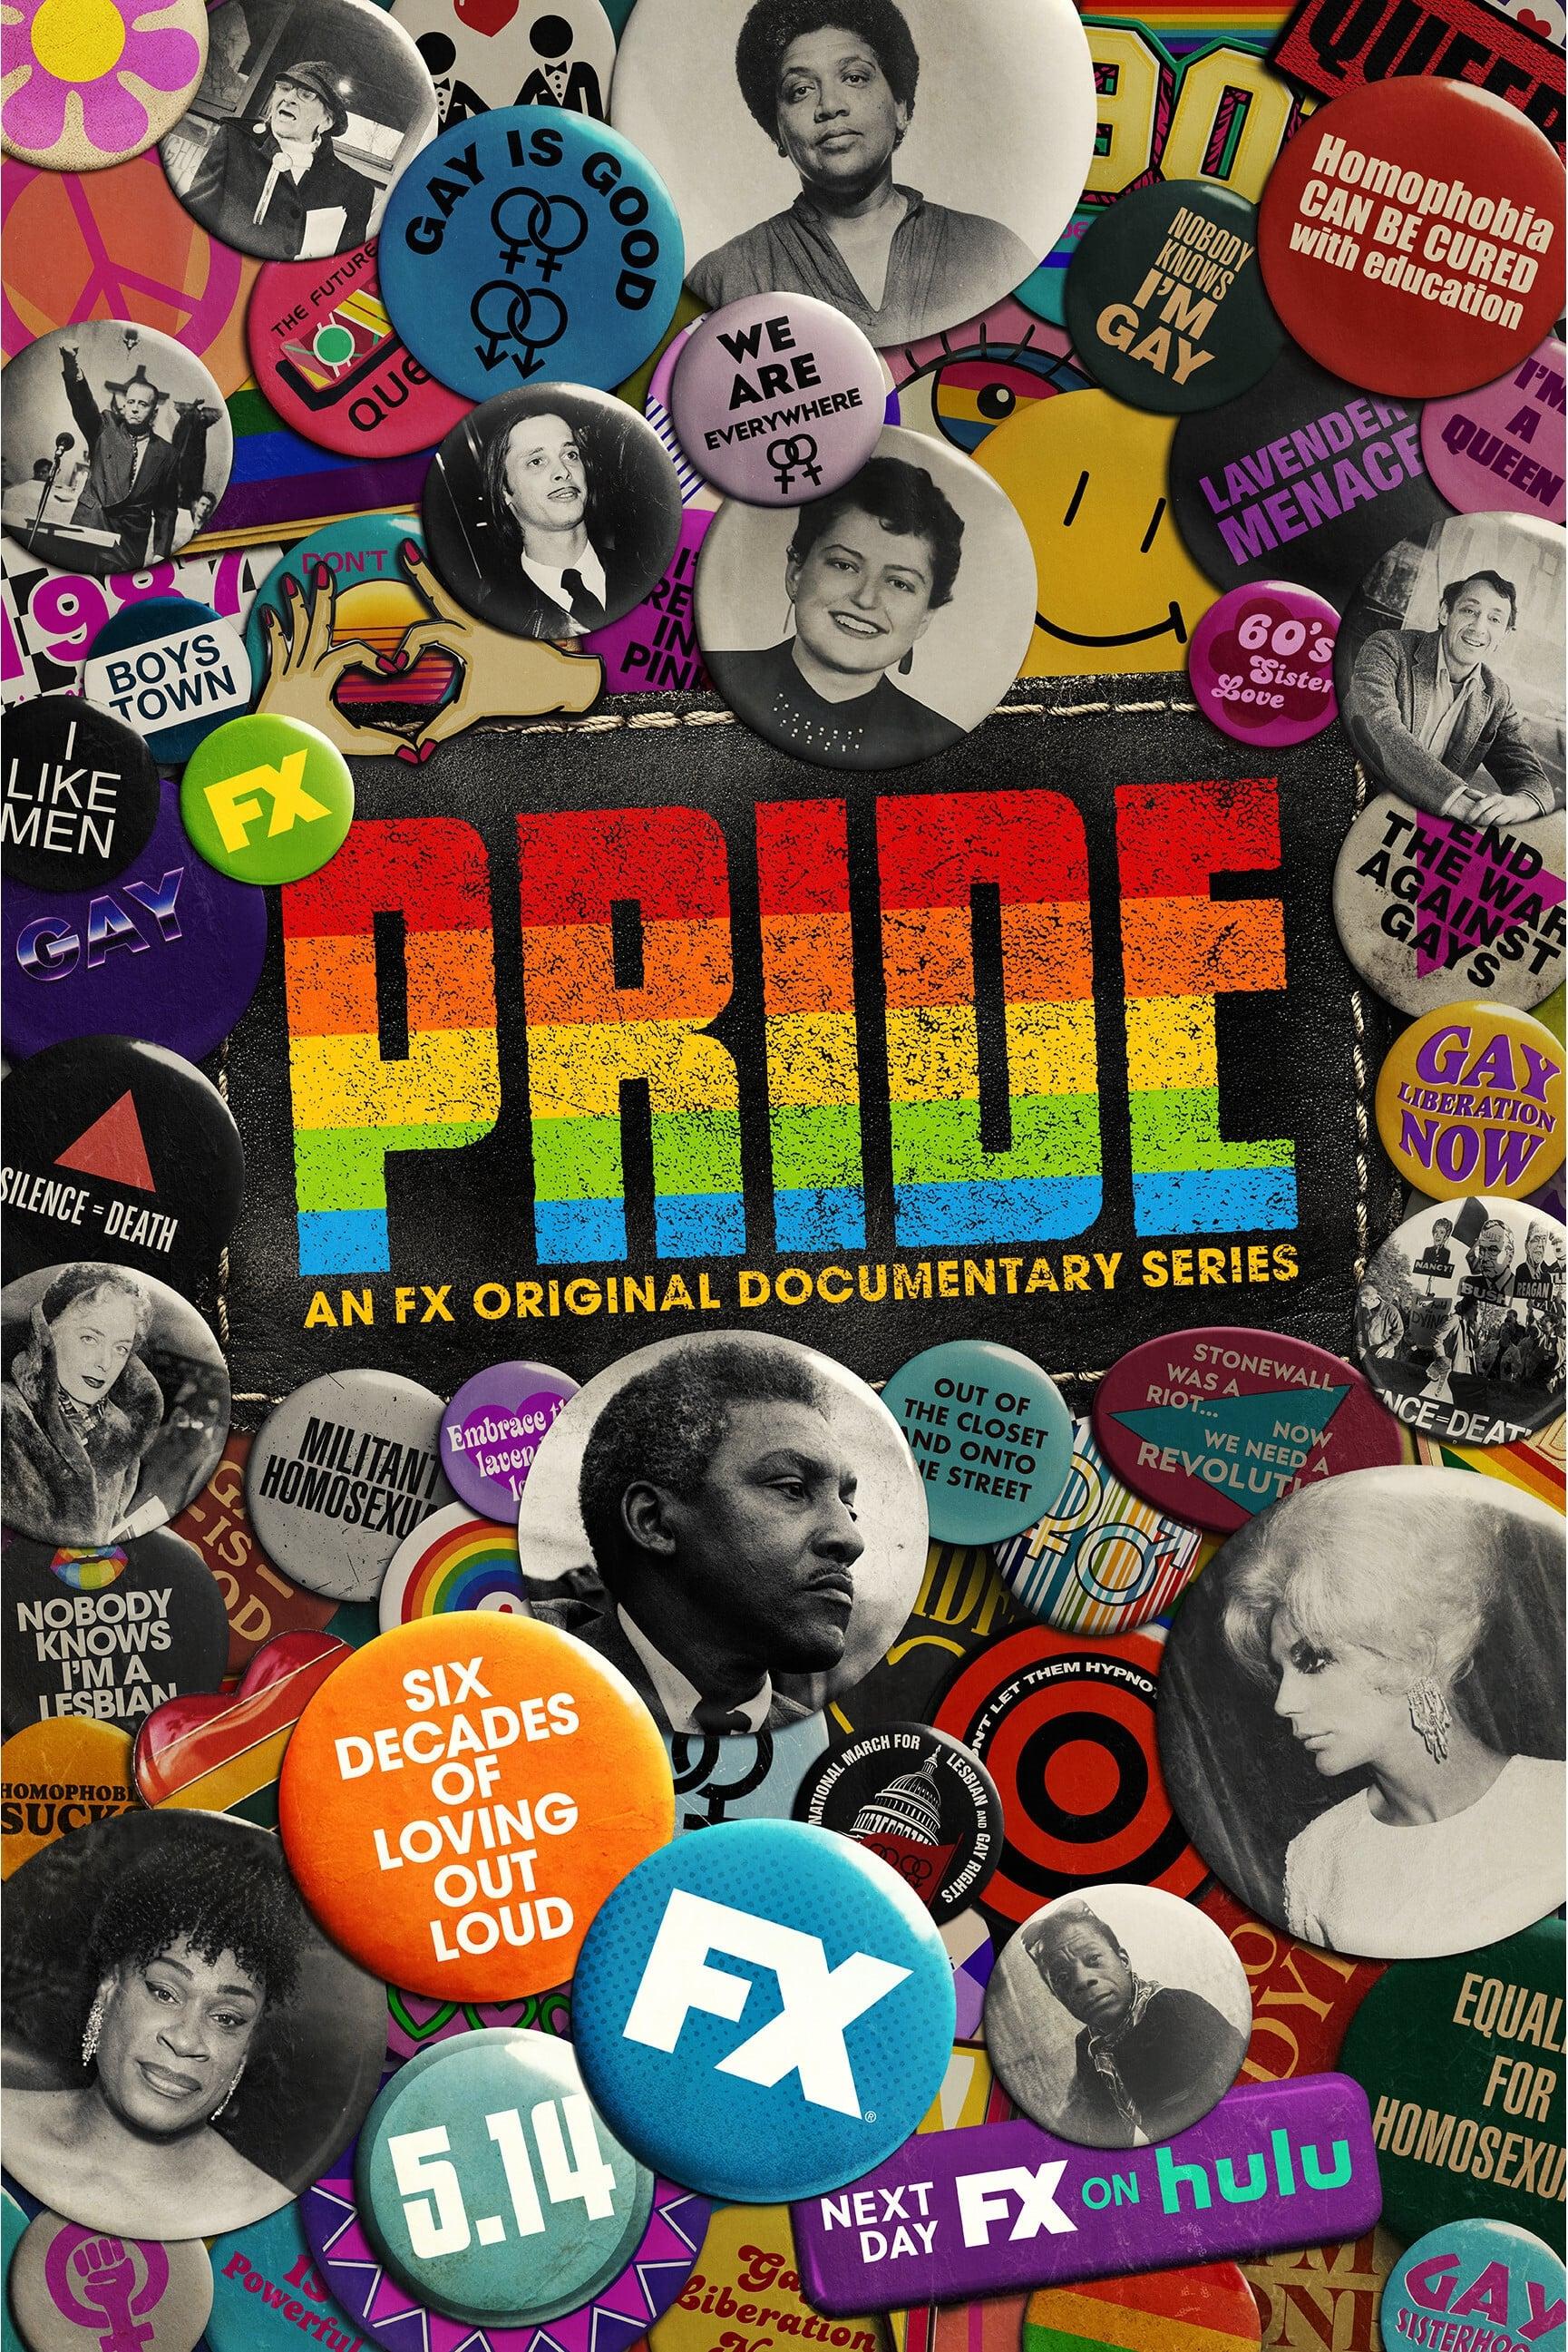 Pride poster